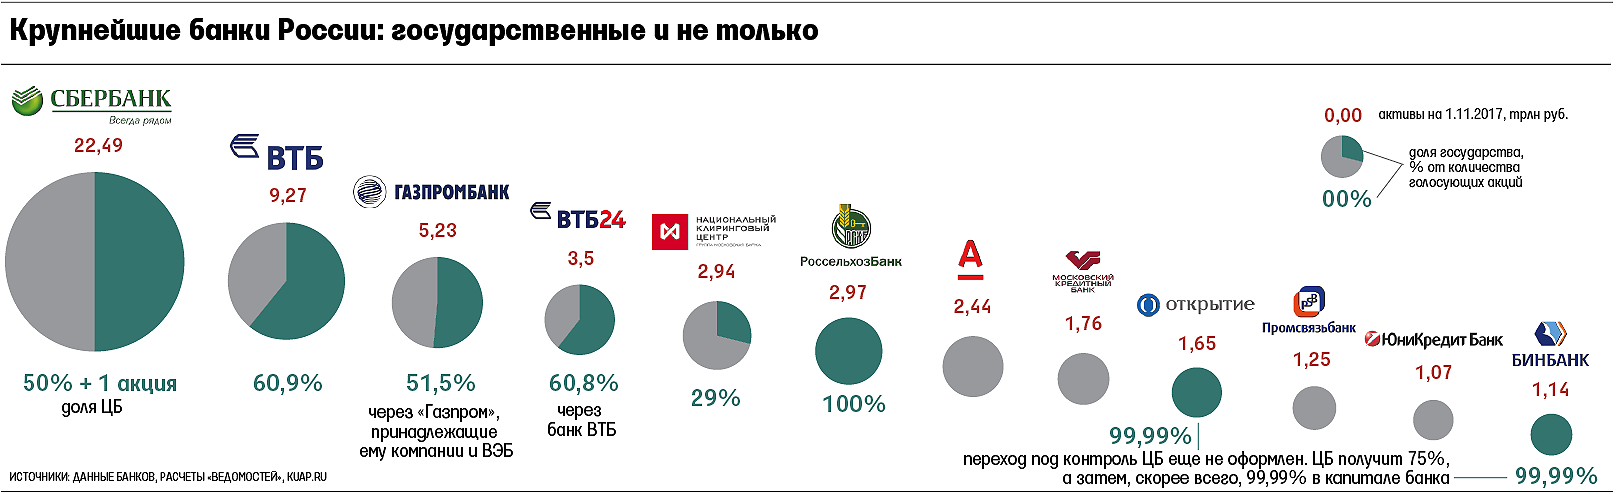 Крупные фирмы в рф действующие на национальном. Статистика центрального банка России. Крупнейшие банки России.